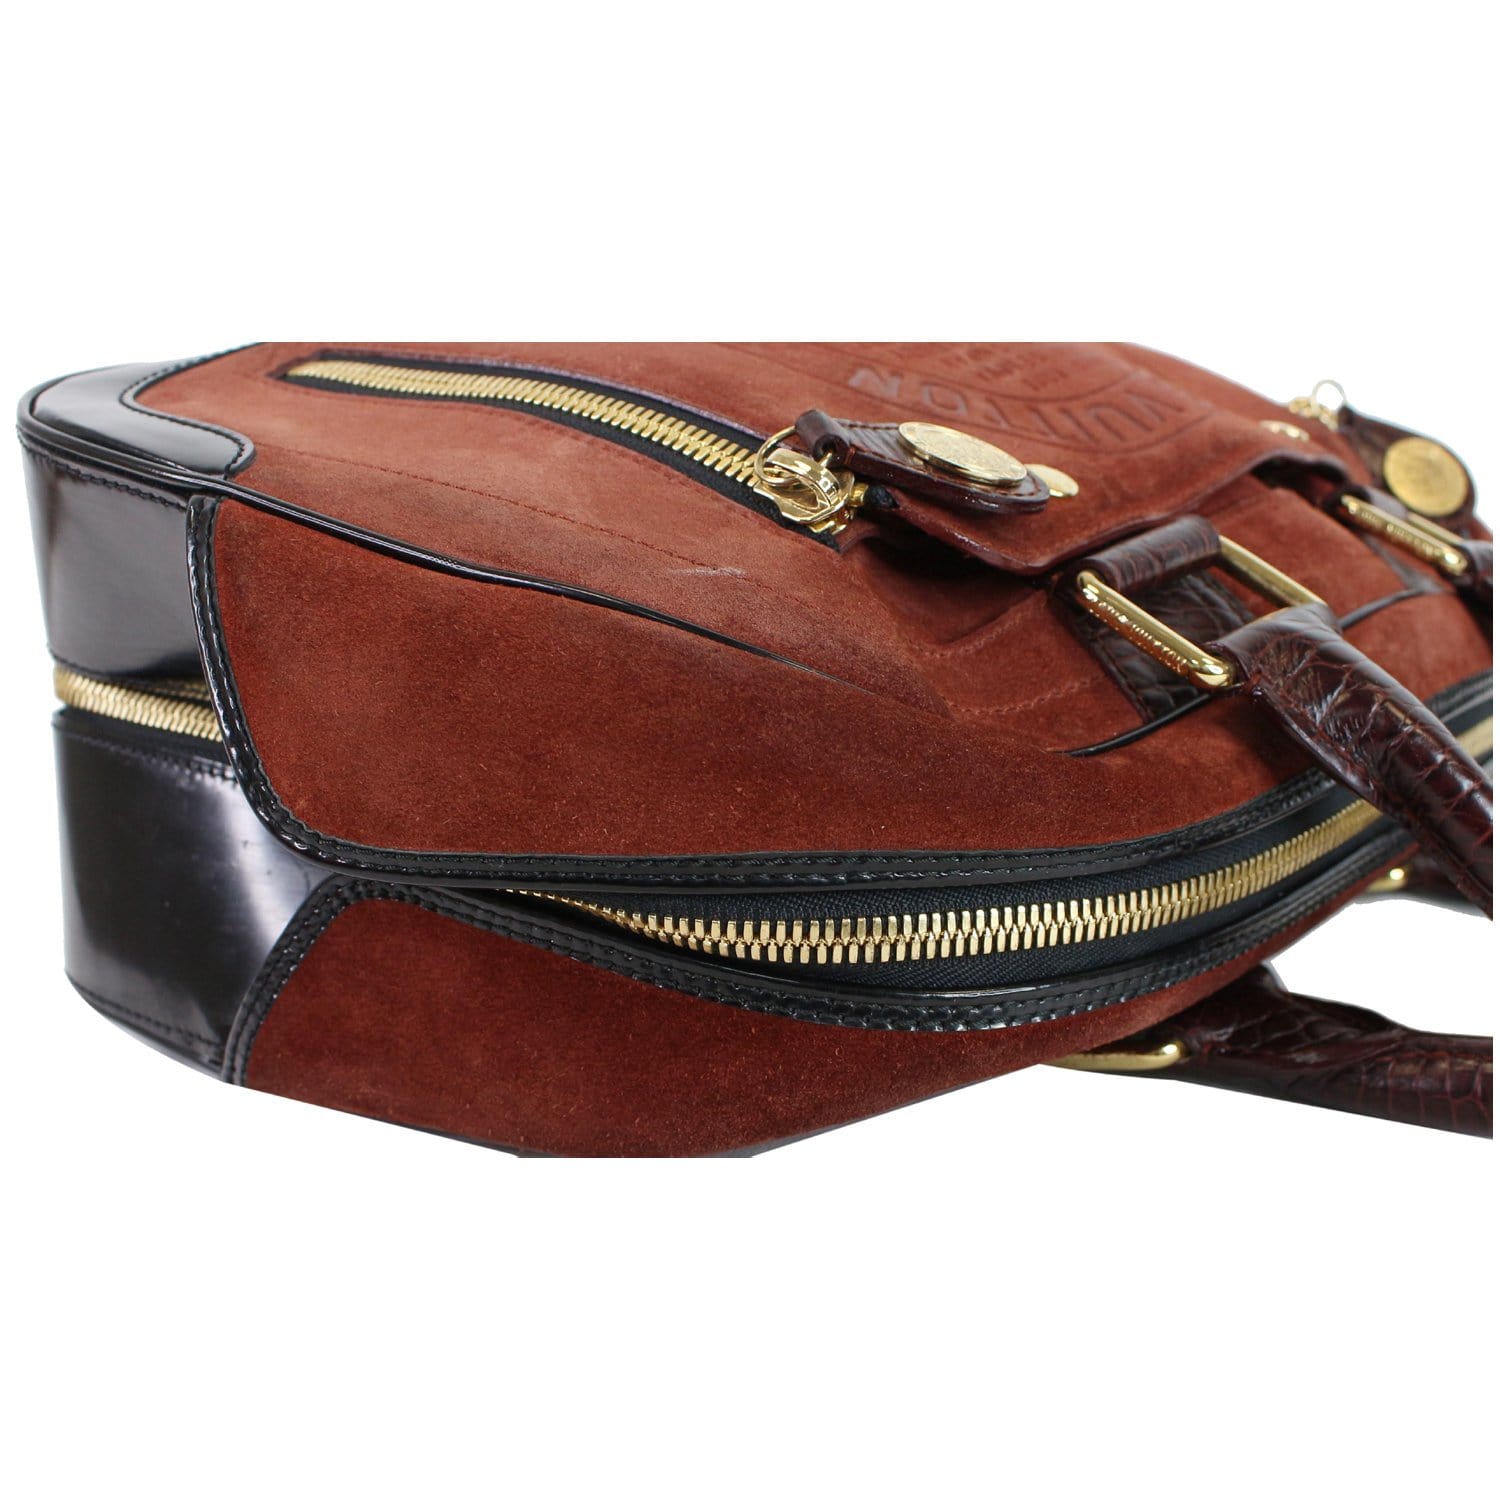 A V A hauls - LV mono backpack medium size. 🥰 Premium Top